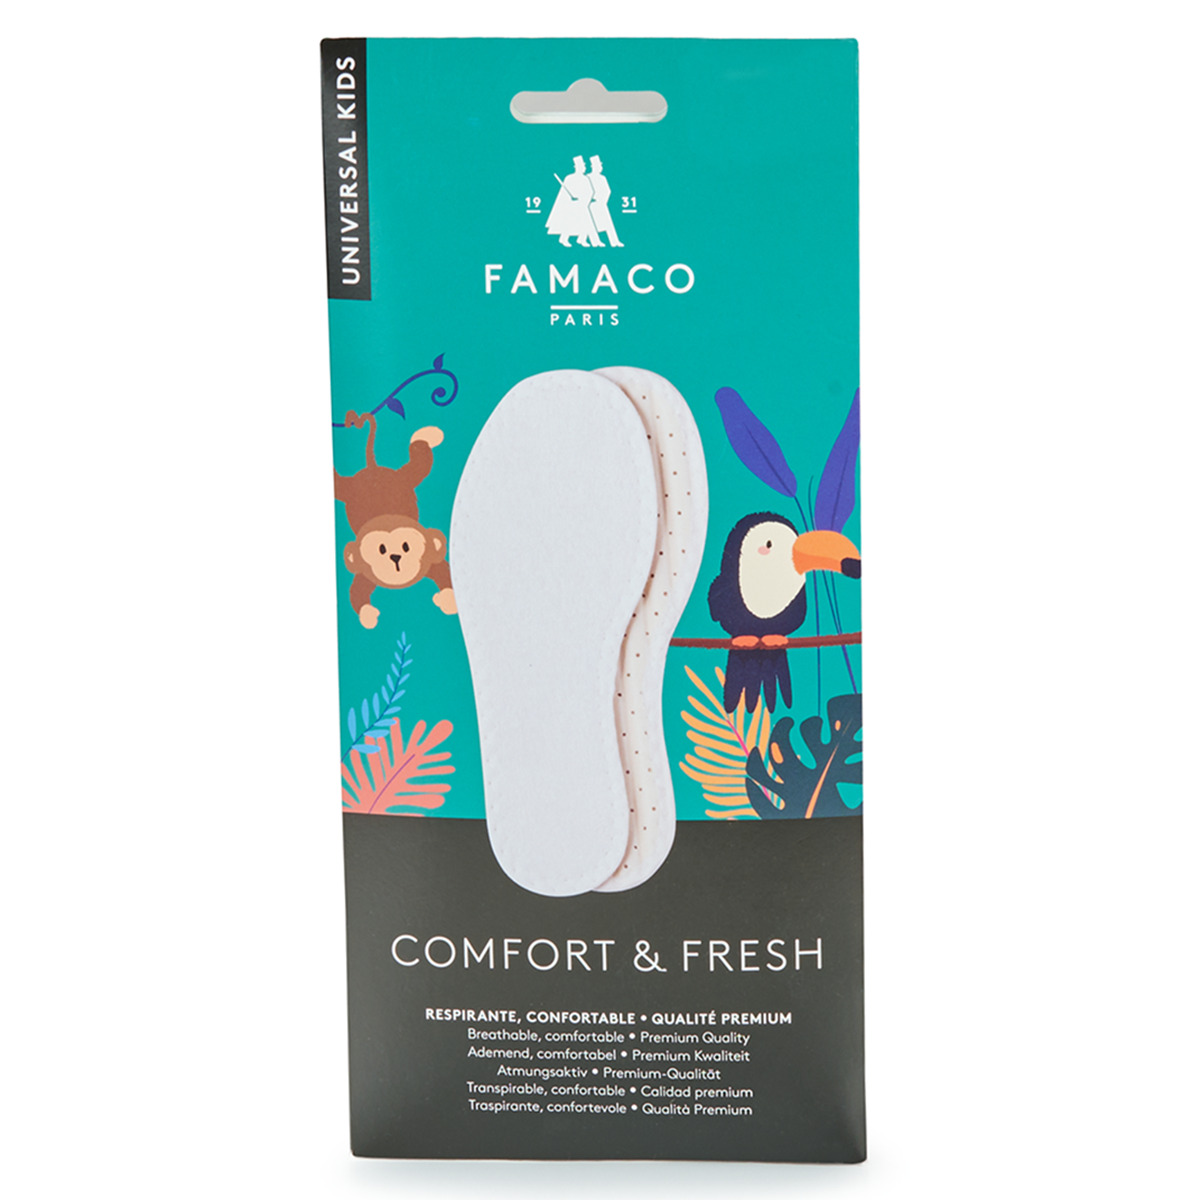 Παπούτσια Famaco Semelle confort fresh T34